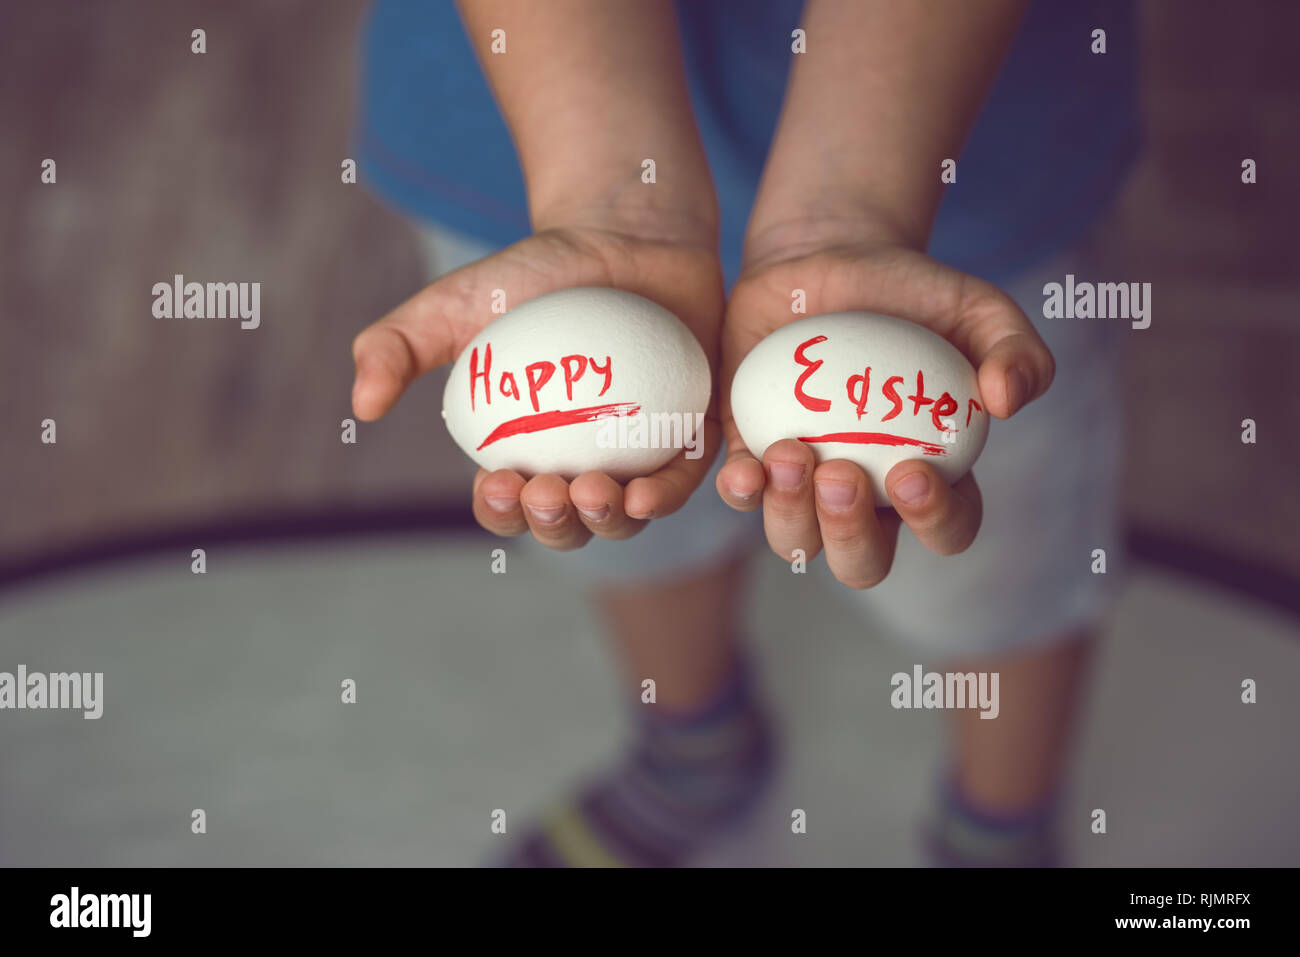 Eier mit der Aufschrift Frohe Ostern das Kind hält in ihren Händen vor Ihm. Stockfoto